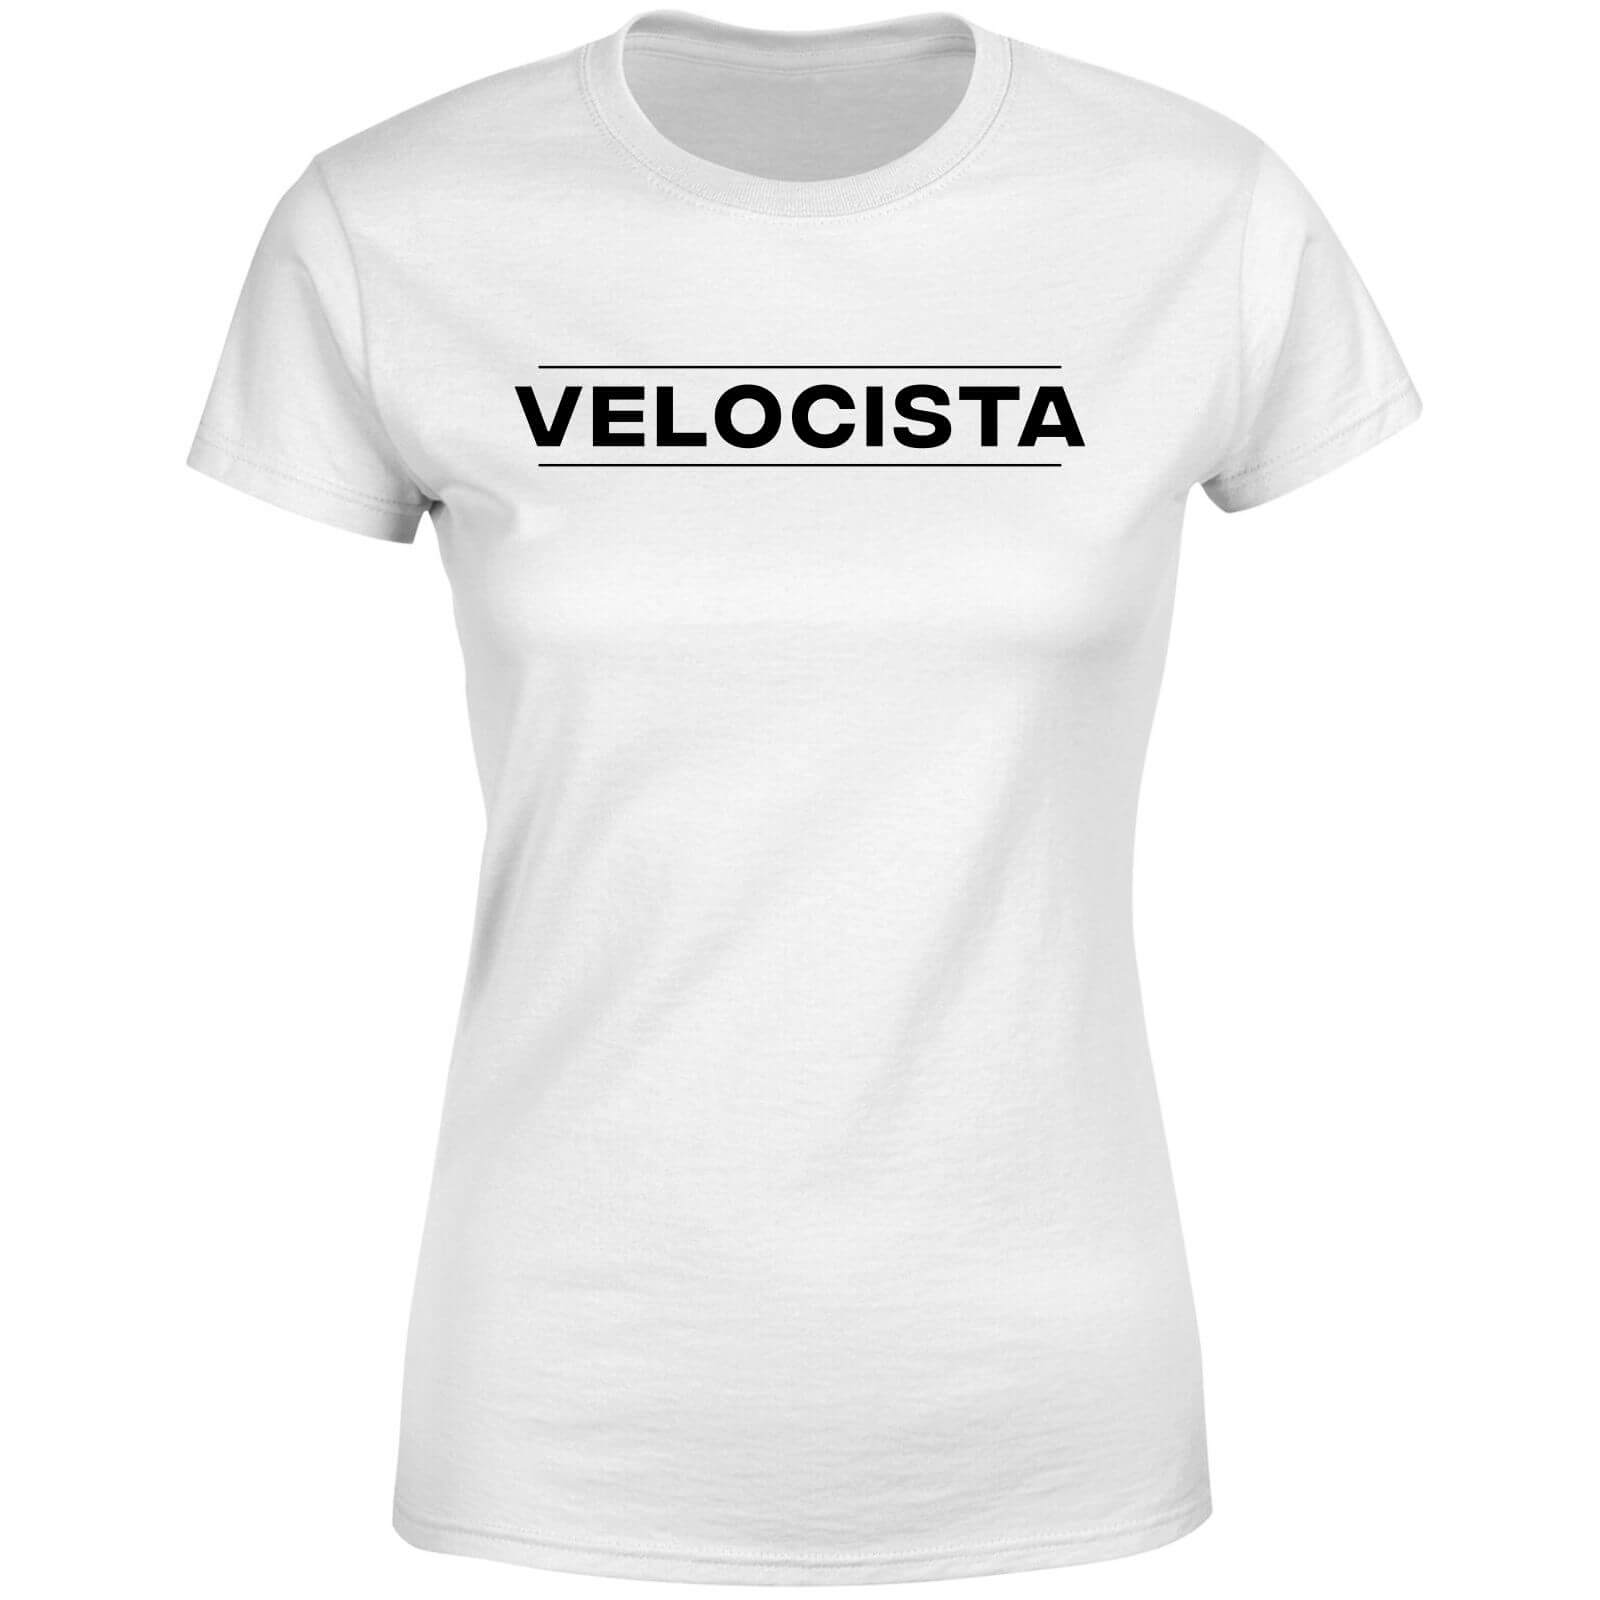 Velocista Women's T-Shirt - White - L - White